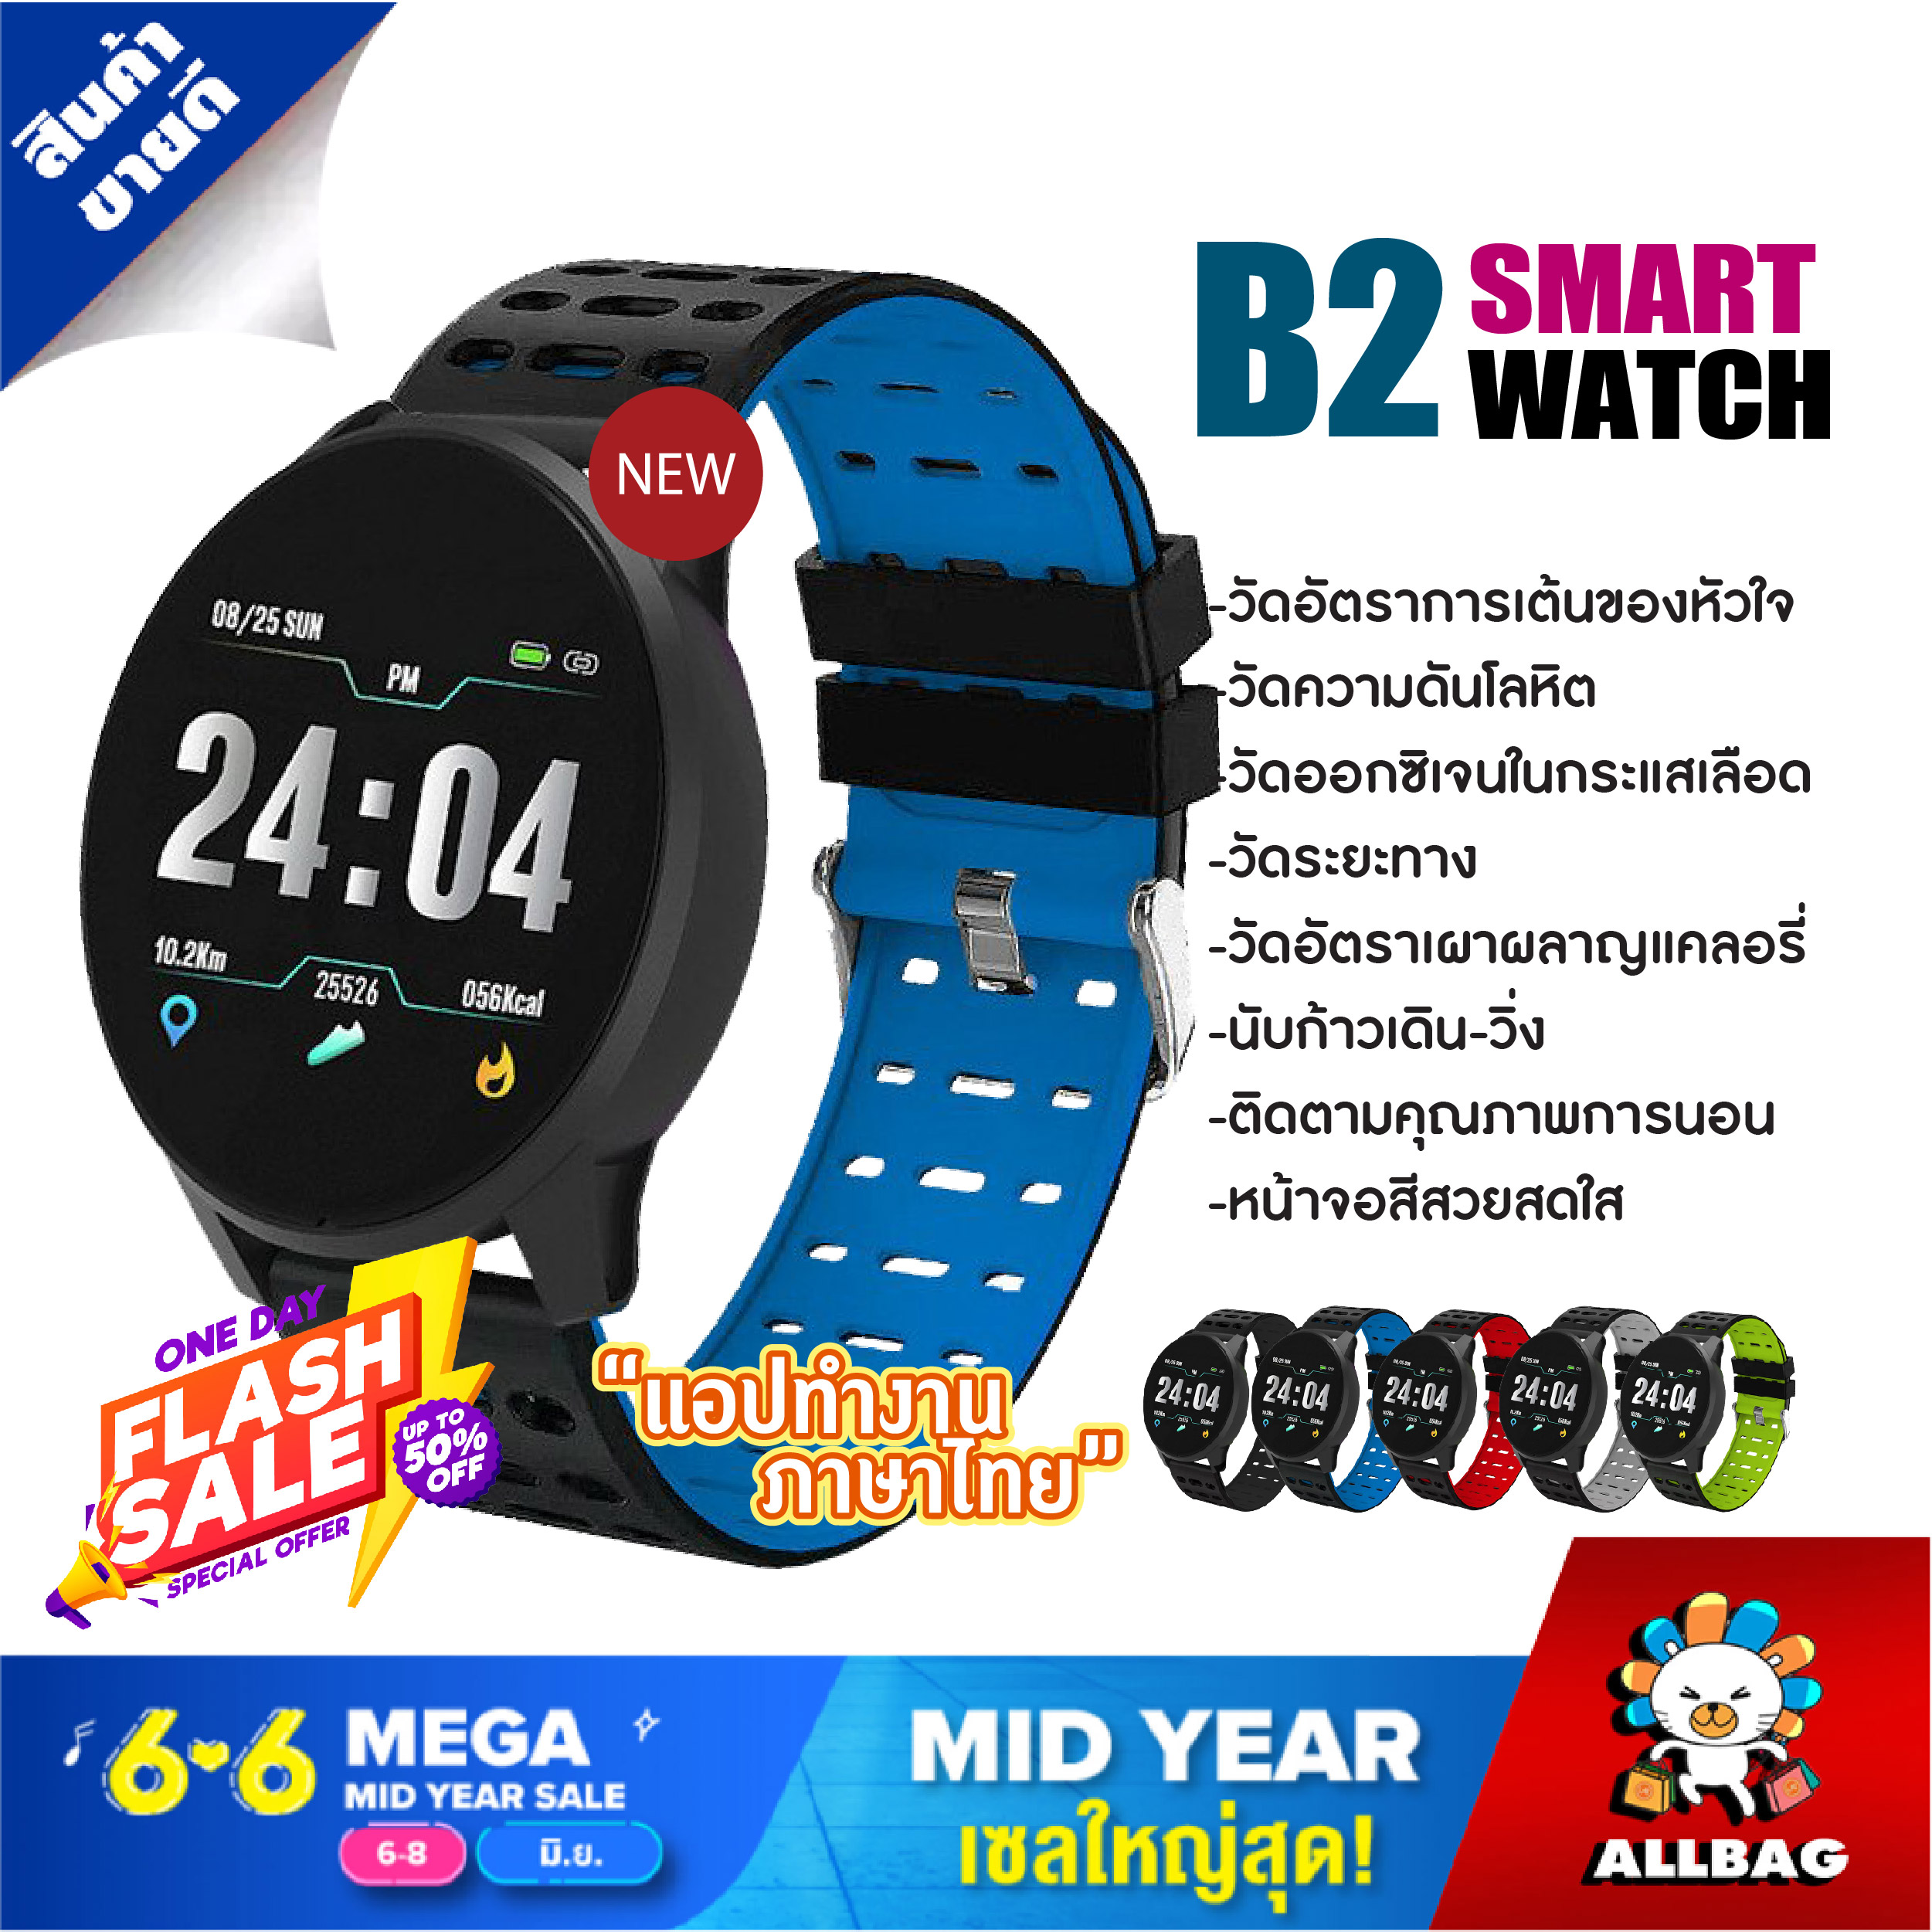 Allbag สมาร์ทวอชท์ สมาทวอช SmartWatch นาฬิกาอัจฉริยะ Smart Watch B2 สมาร์ทวอทช์ รองรับภาษาไทย  นาฬิกา ดิจิตอล ใช้ได้ทั้ง Android และ IOS